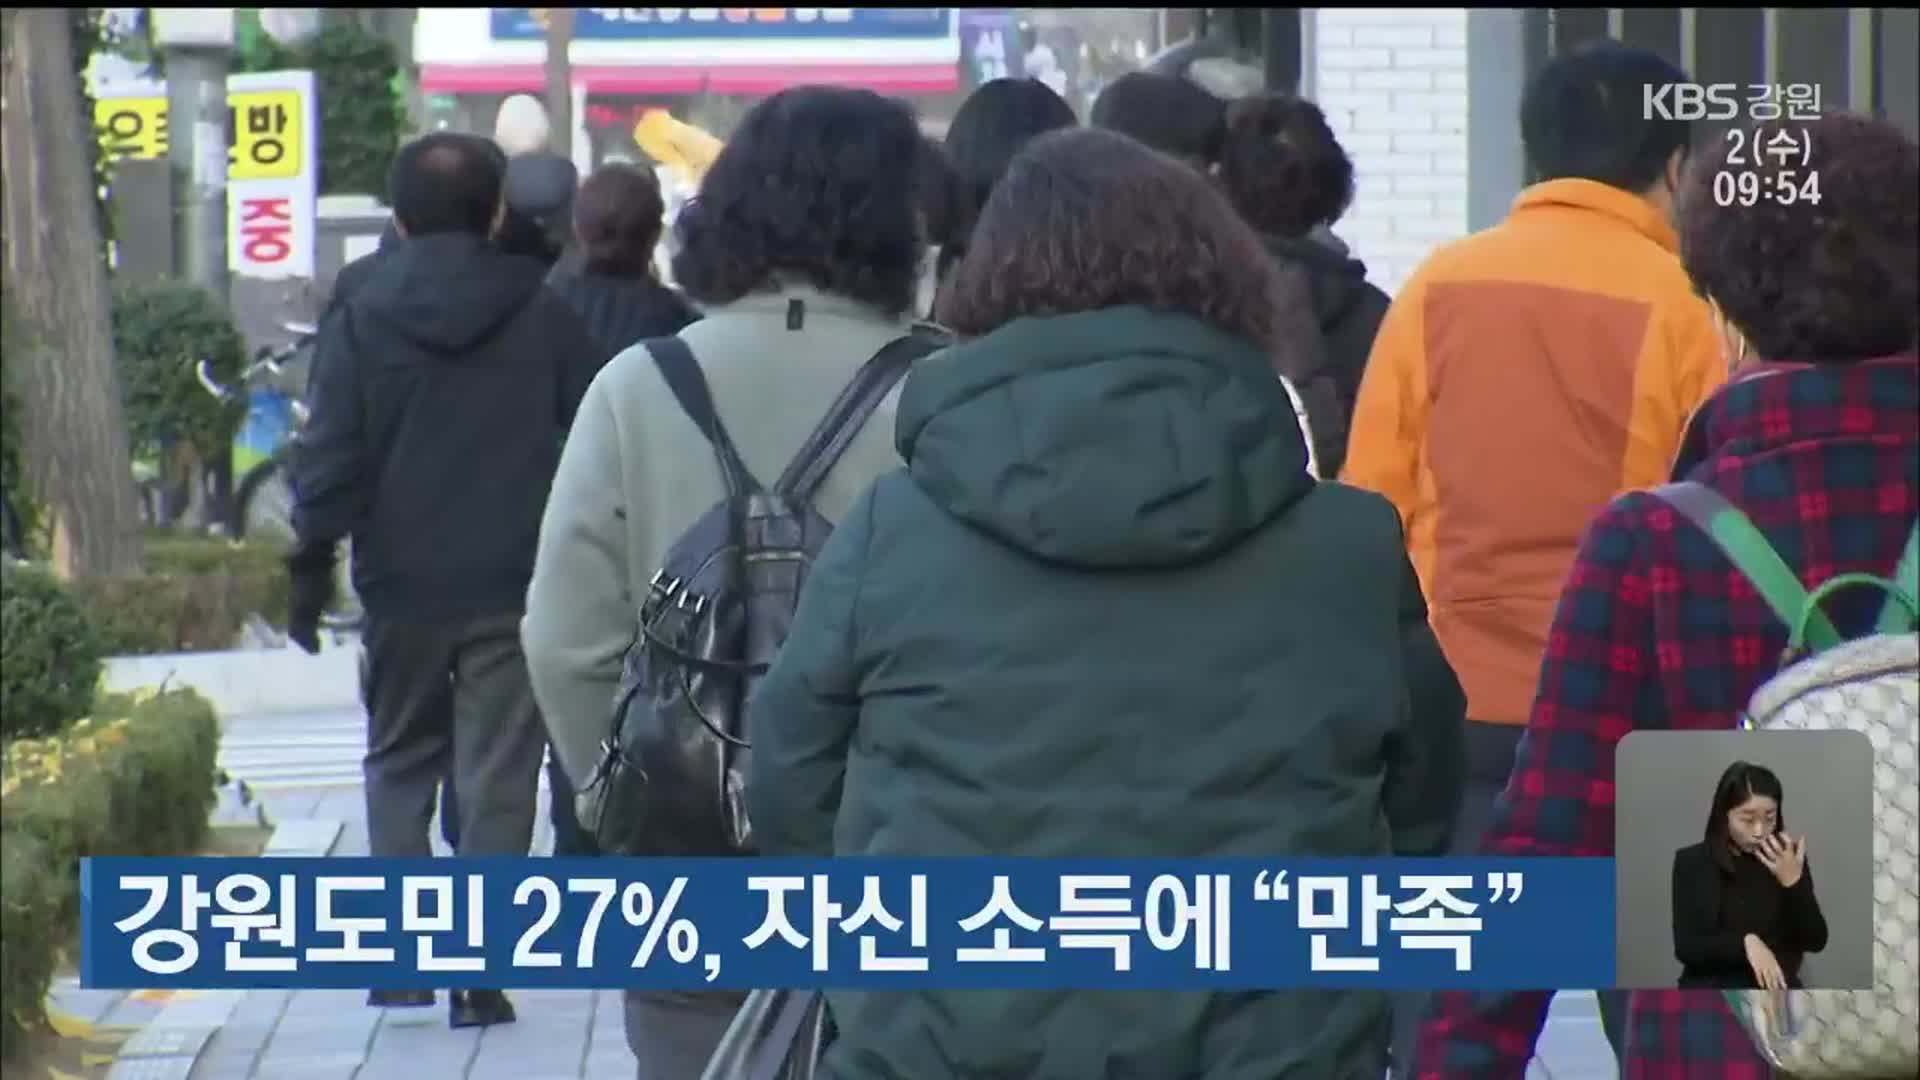 강원도민 27%, 자신 소득에 “만족”